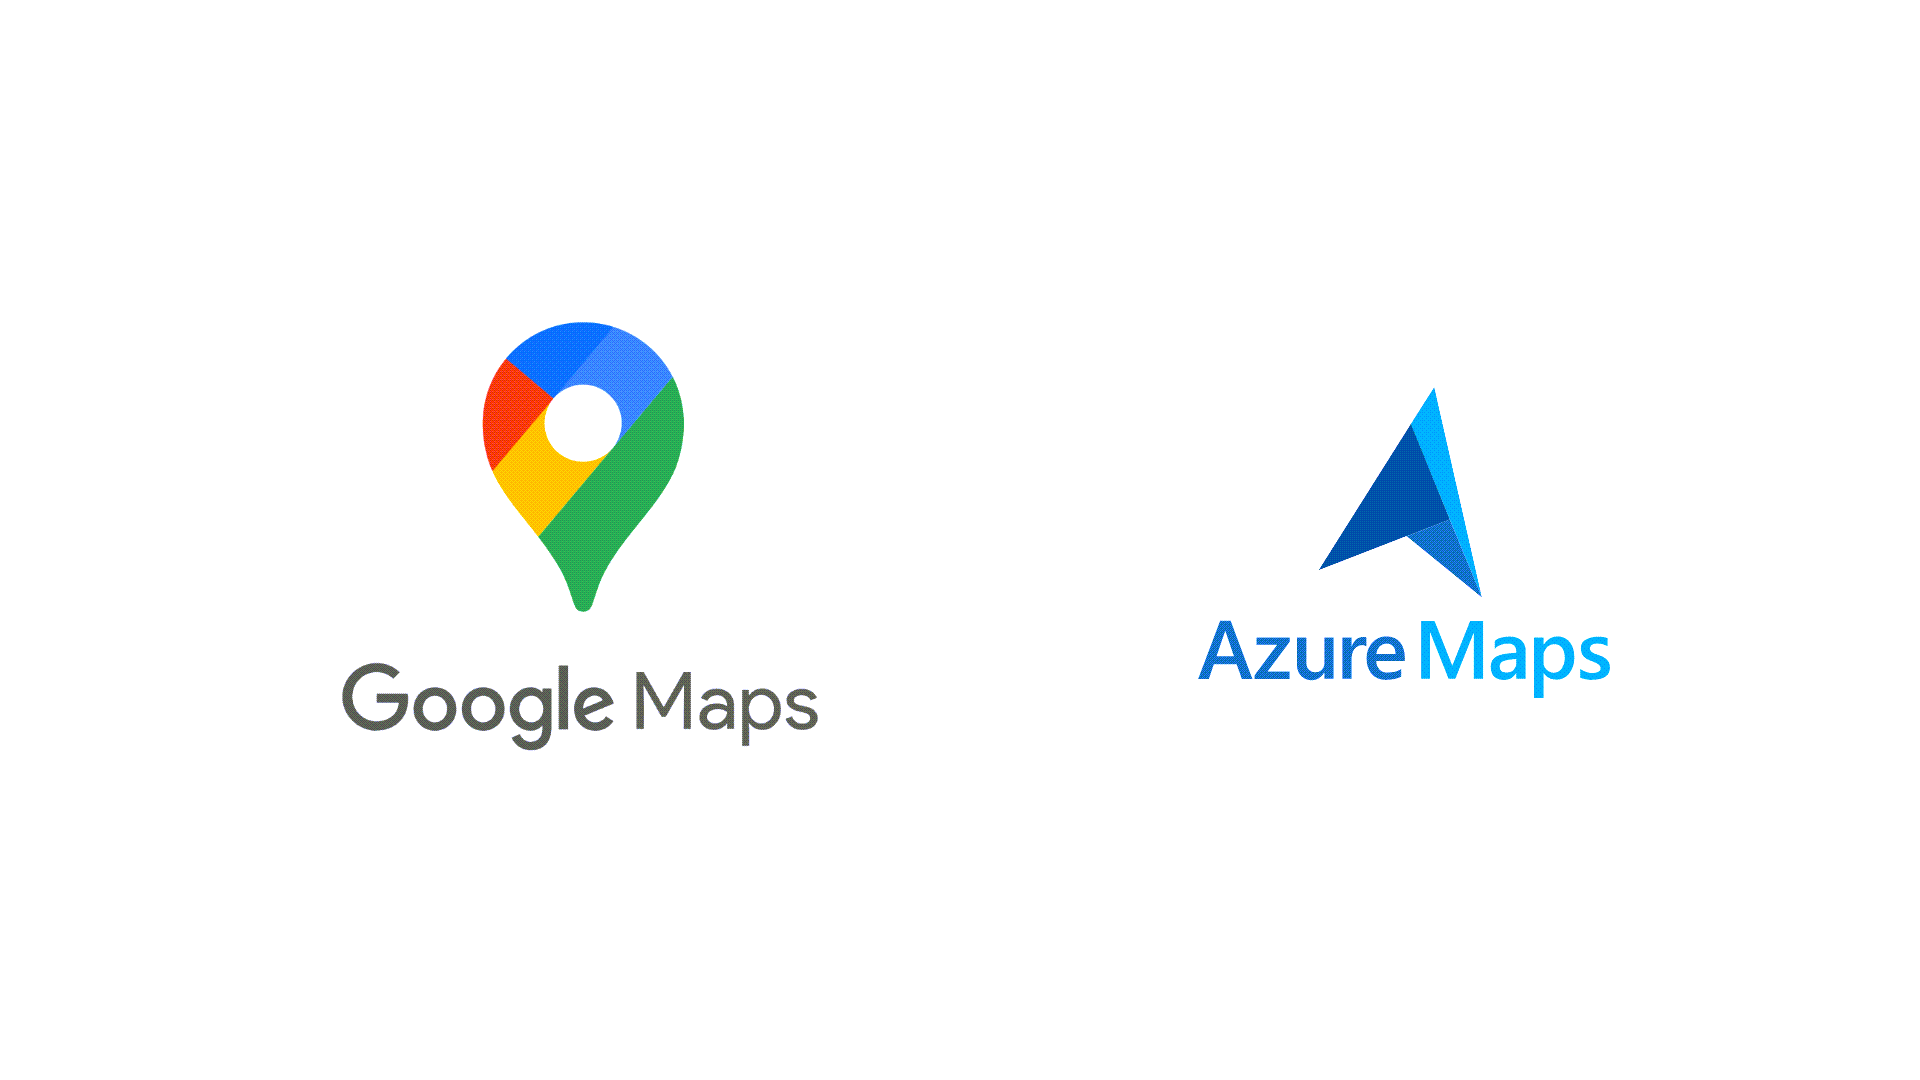 google maps api logo